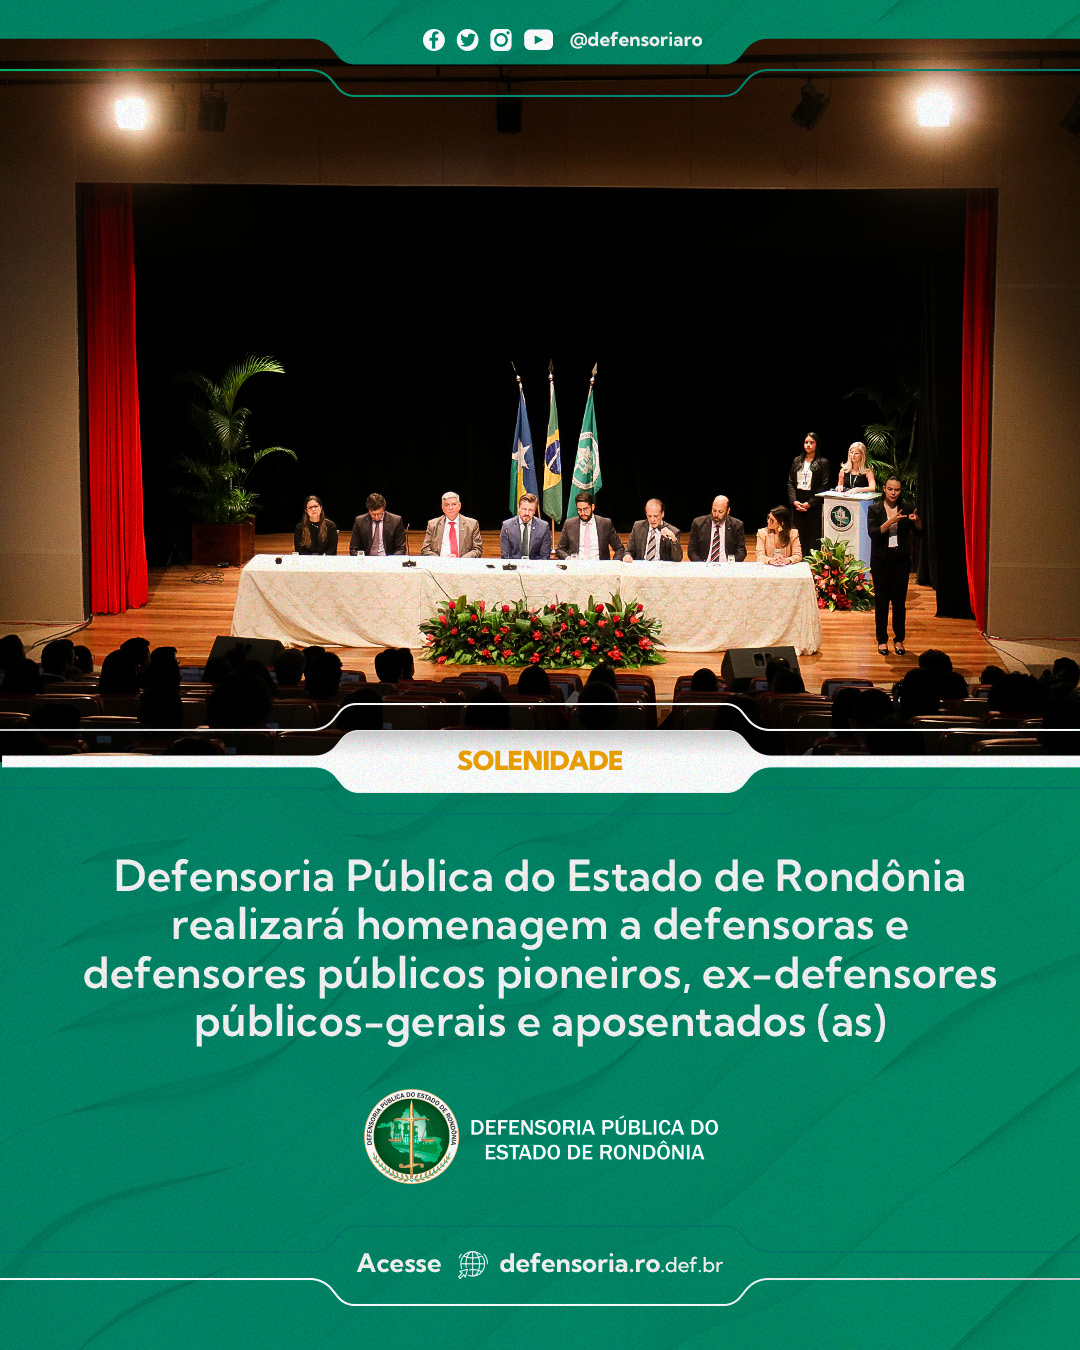 Defensoria Pública do Estado de Rondônia realizará homenagem a defensoras e defensores públicos pioneiros, ex-defensores públicos-gerais e aposentados